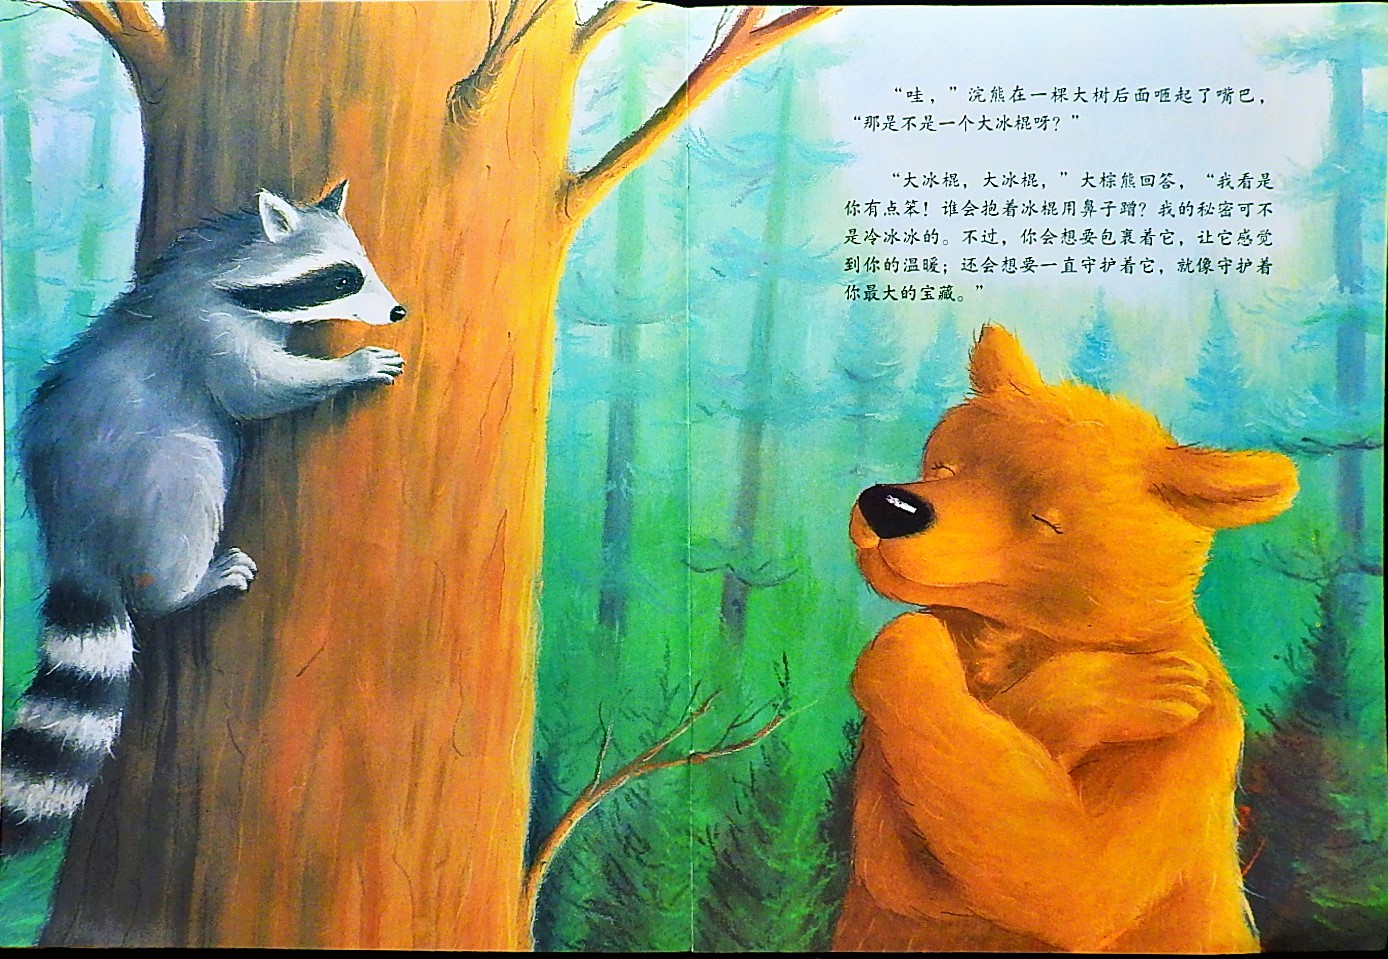 大棕熊的秘密 (06),绘本,绘本故事,绘本阅读,故事书,童书,图画书,课外阅读